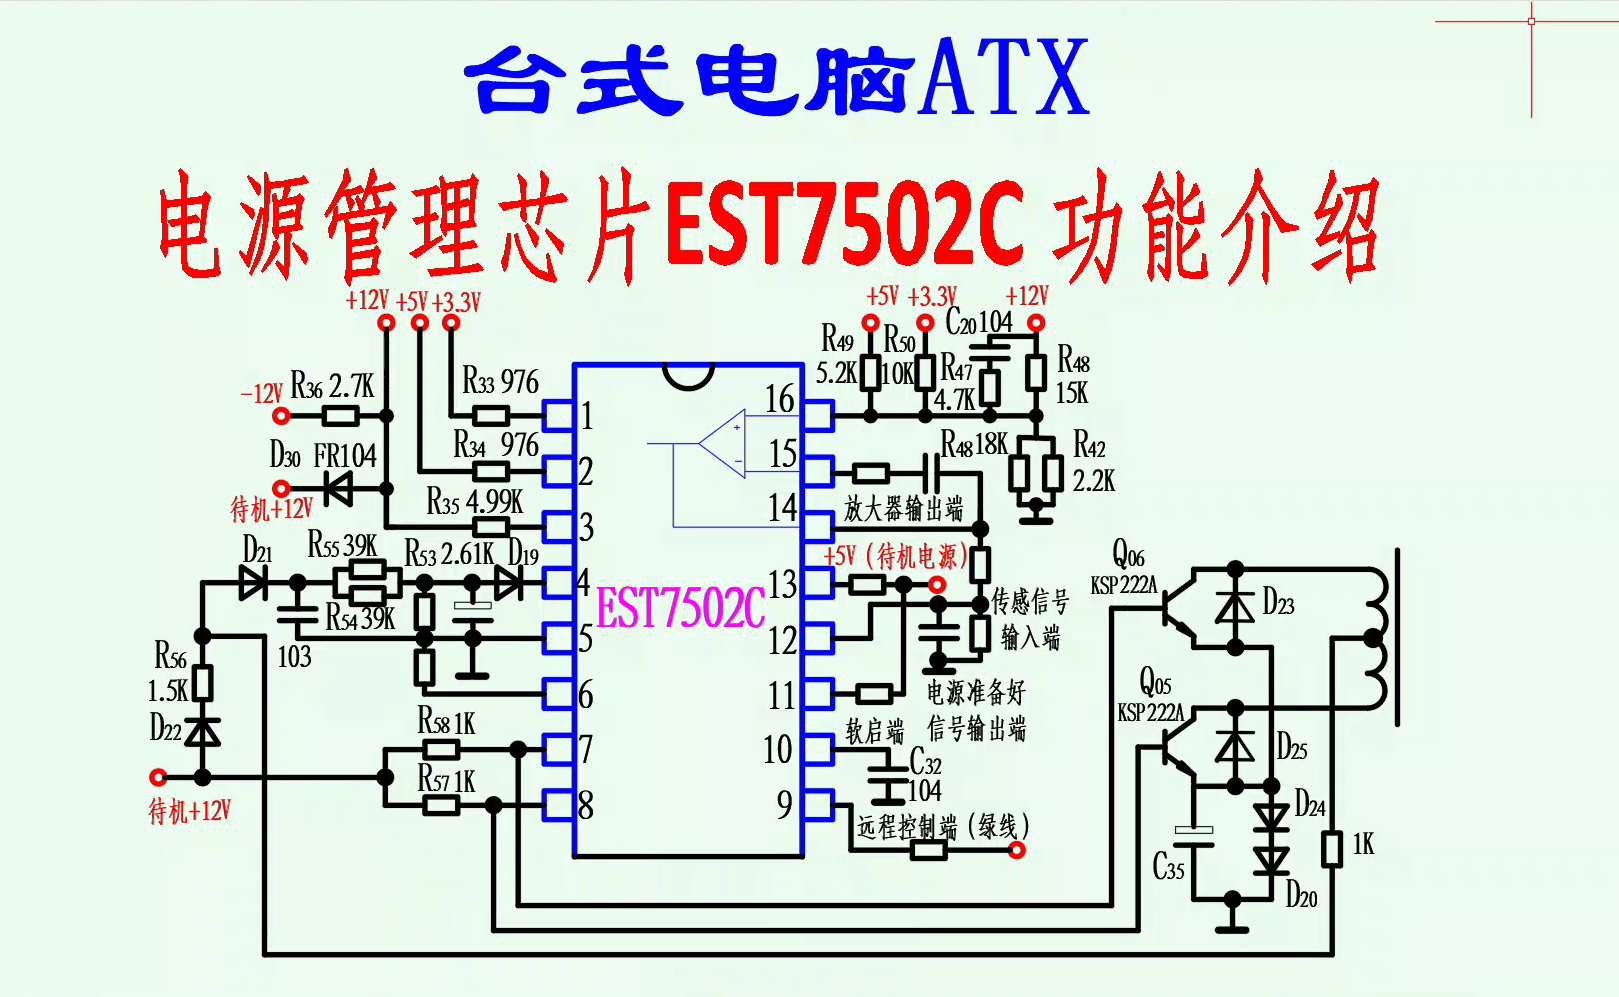 臺式電腦ATX電源—電源管理芯片EST7502C 功能介紹